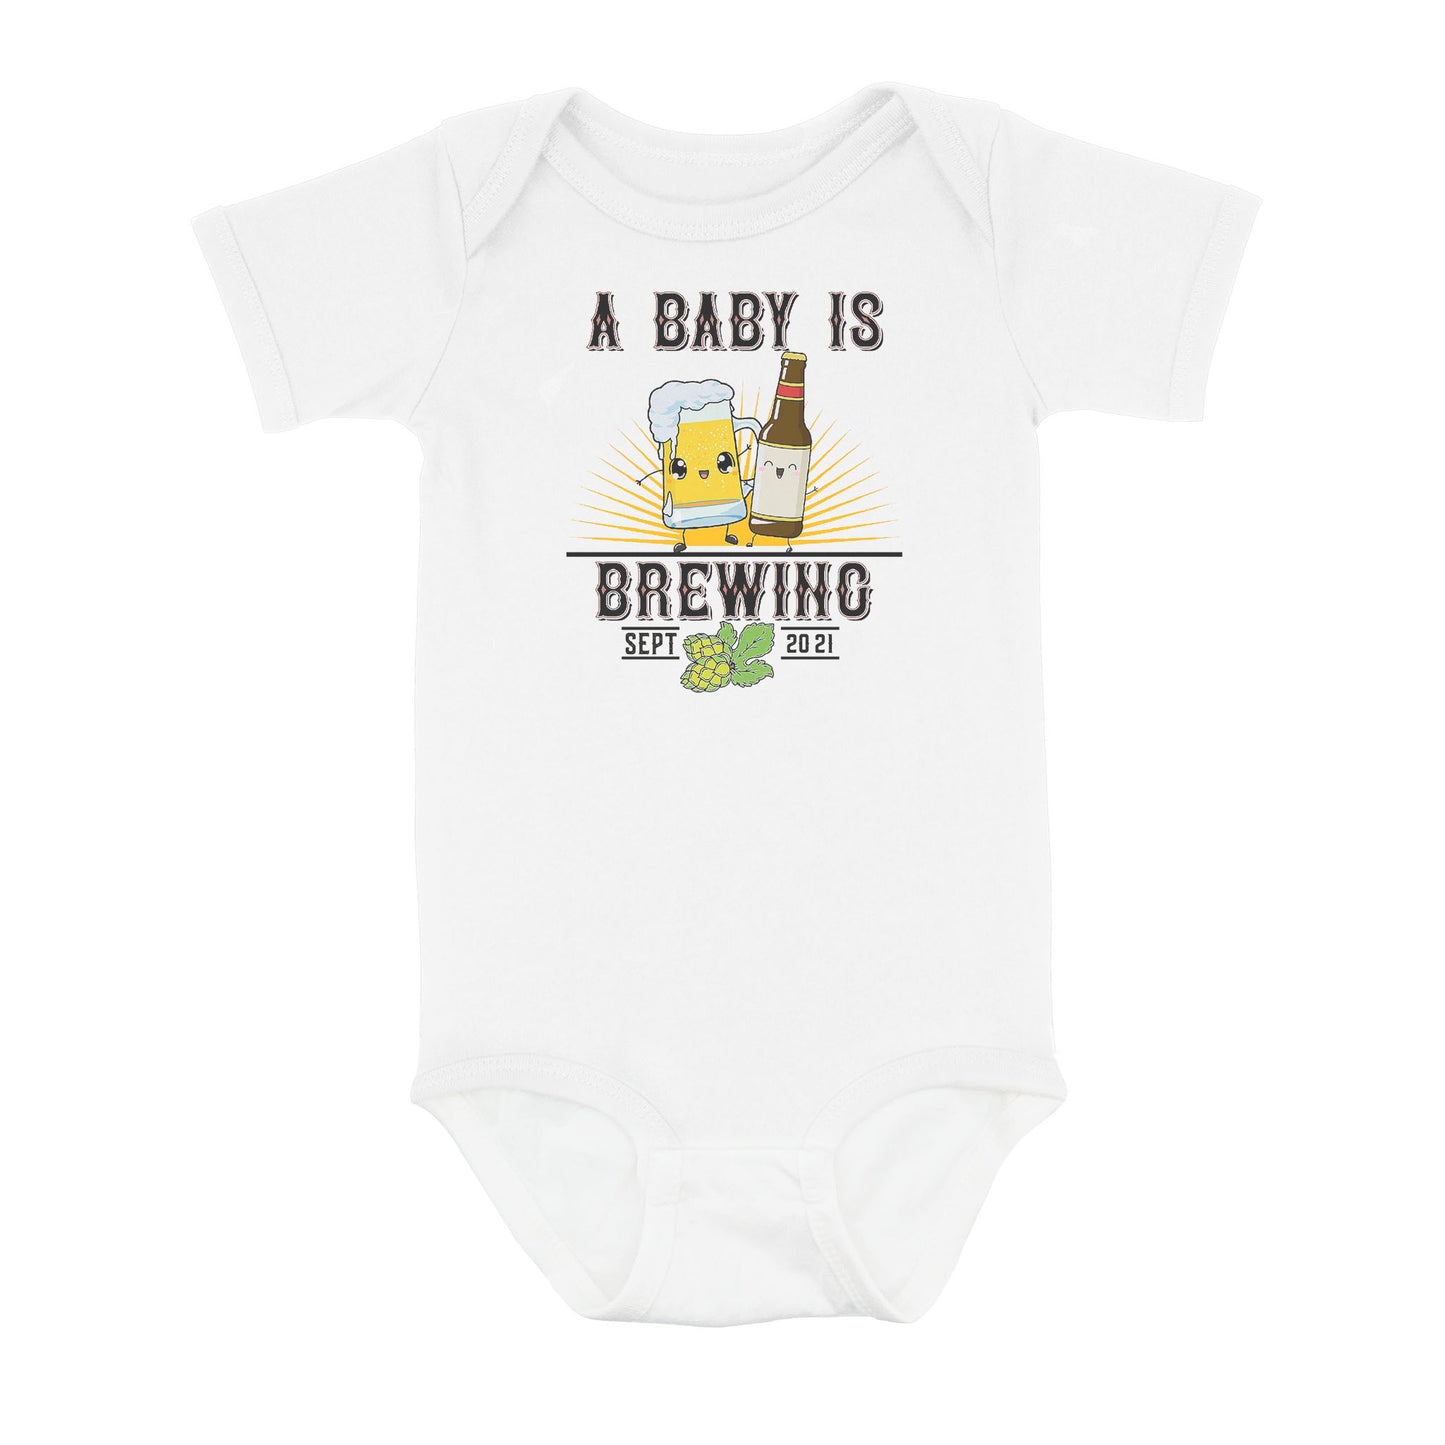 Divesart - A Baby Is Brewing Onesie, Beer Onesie, Announcement Onesie, Pregnancy Reveal, Beer Pint, Personalized